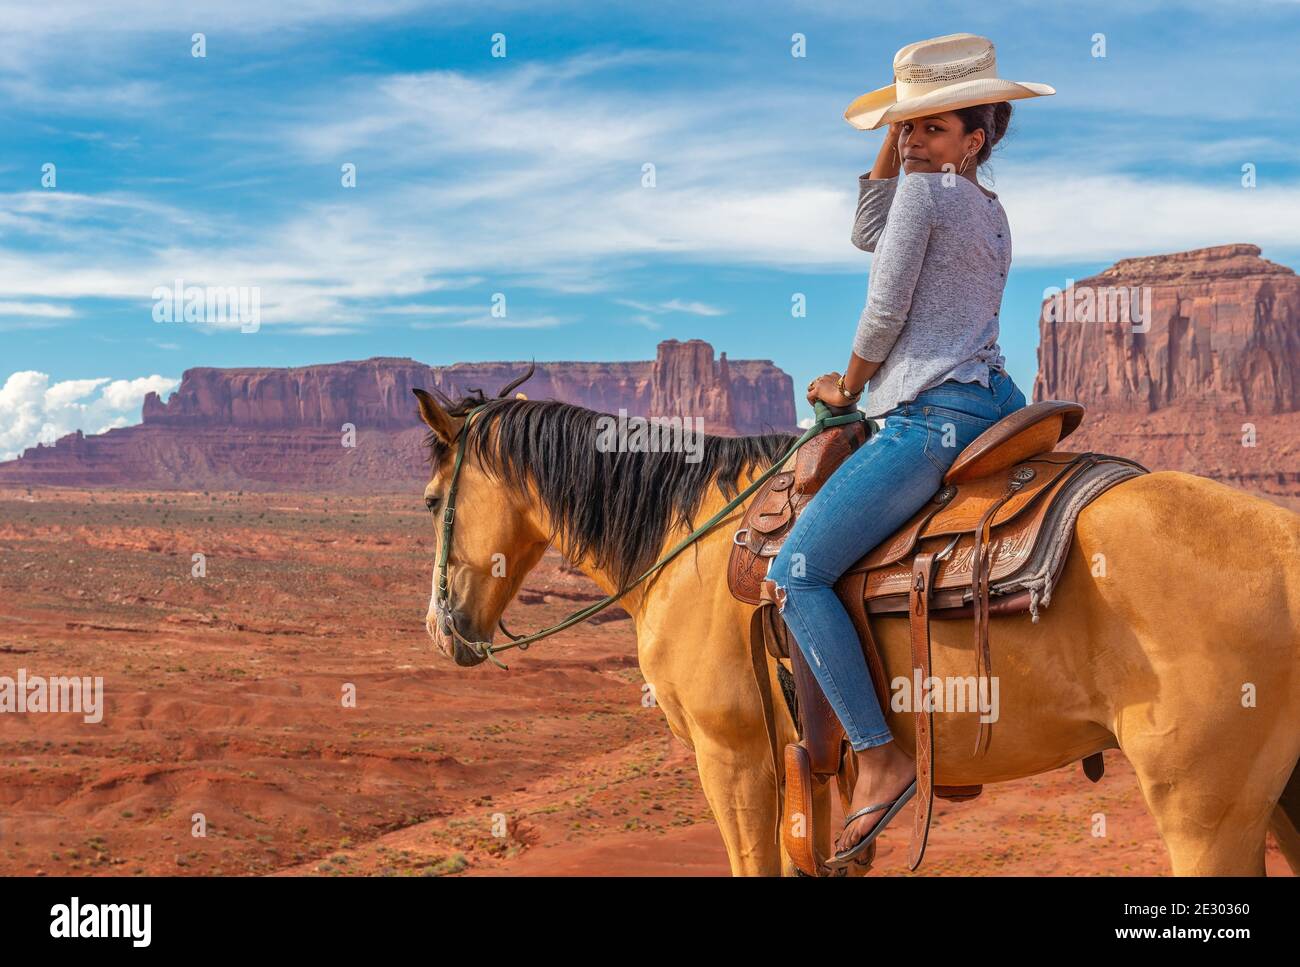 Giovane donna afroamericana a cavallo dal punto di vista di John Ford con West Mitten butte e Mitchell mesa, Monument Valley Navajo Tribal Park, USA. Foto Stock